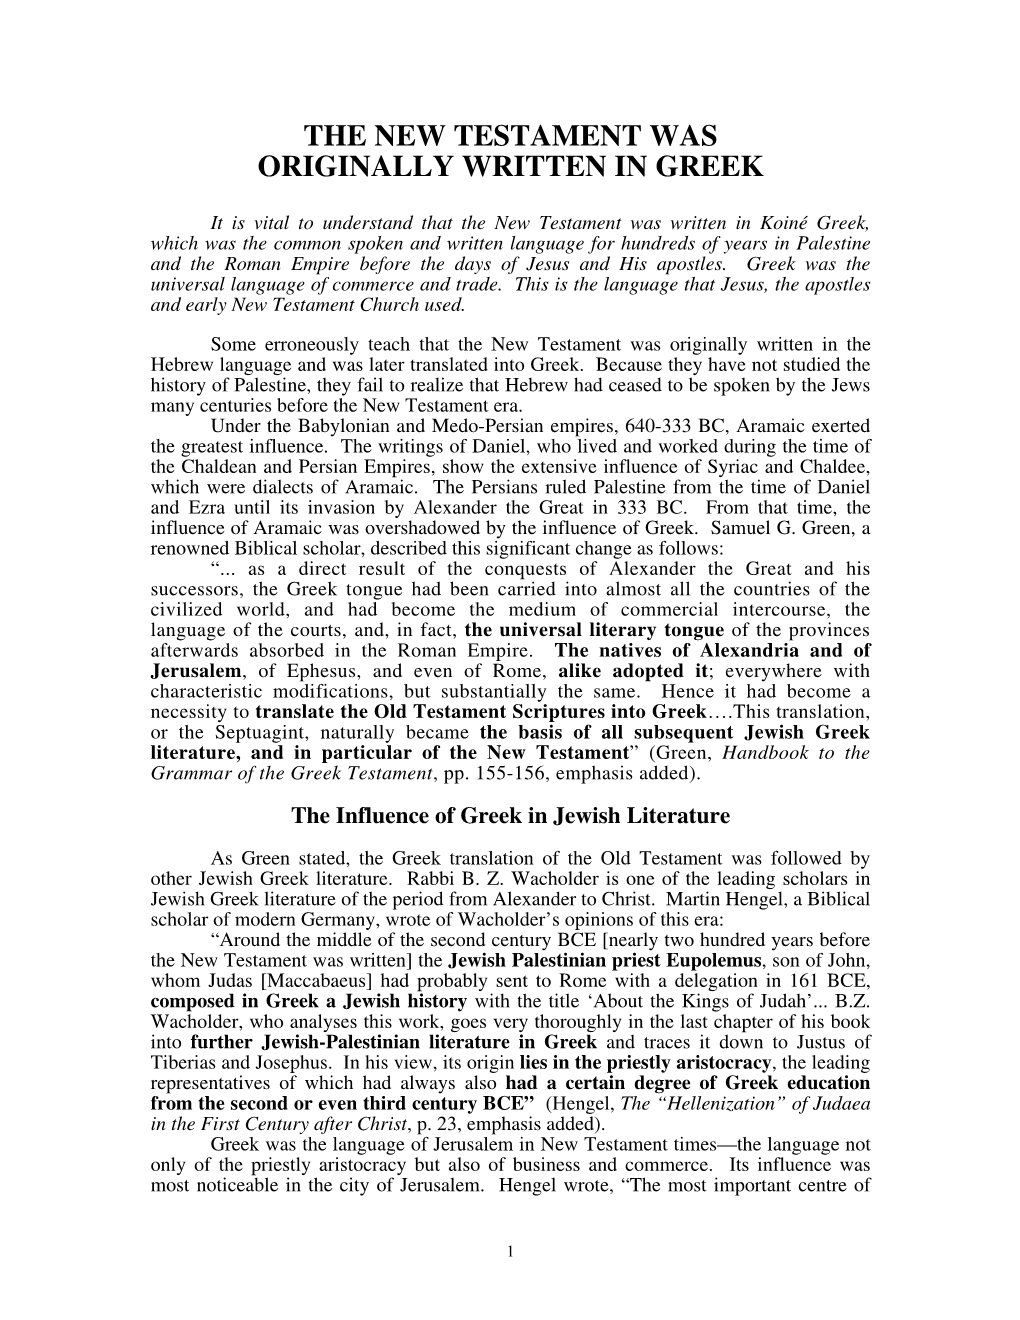 The New Testament Was Originally Written in Greek